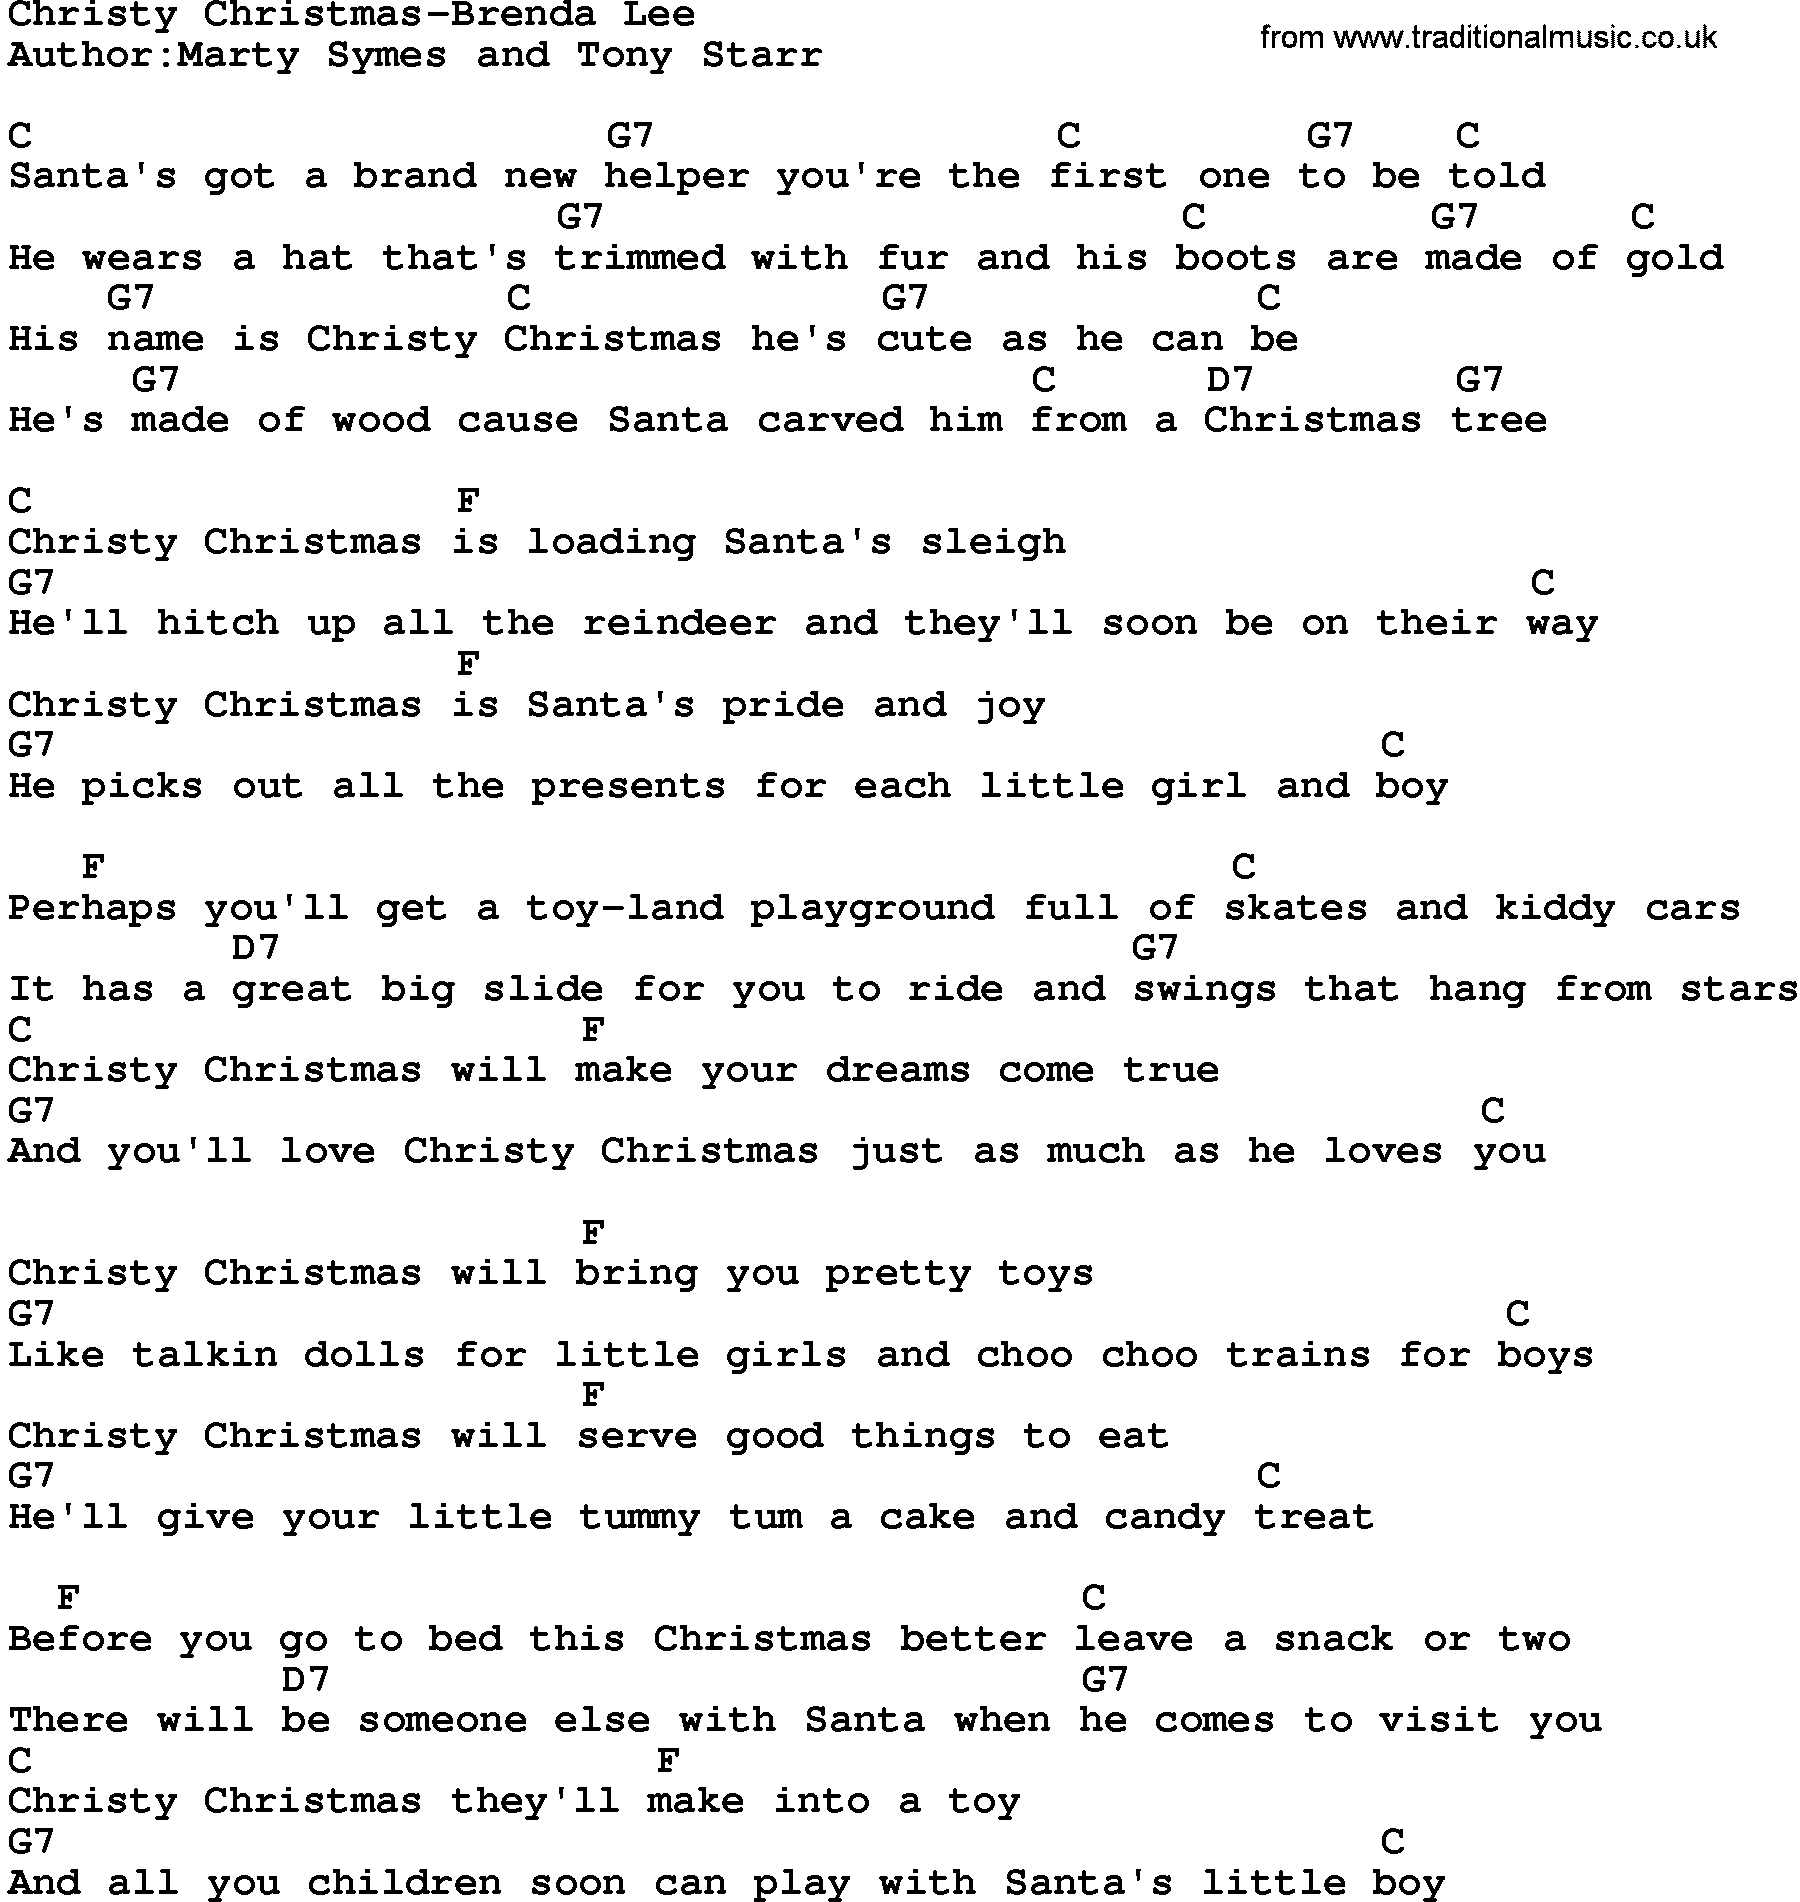 Riptide Chords Ukulele Country Musicchristy Christmas Brenda Lee Lyrics And Chords